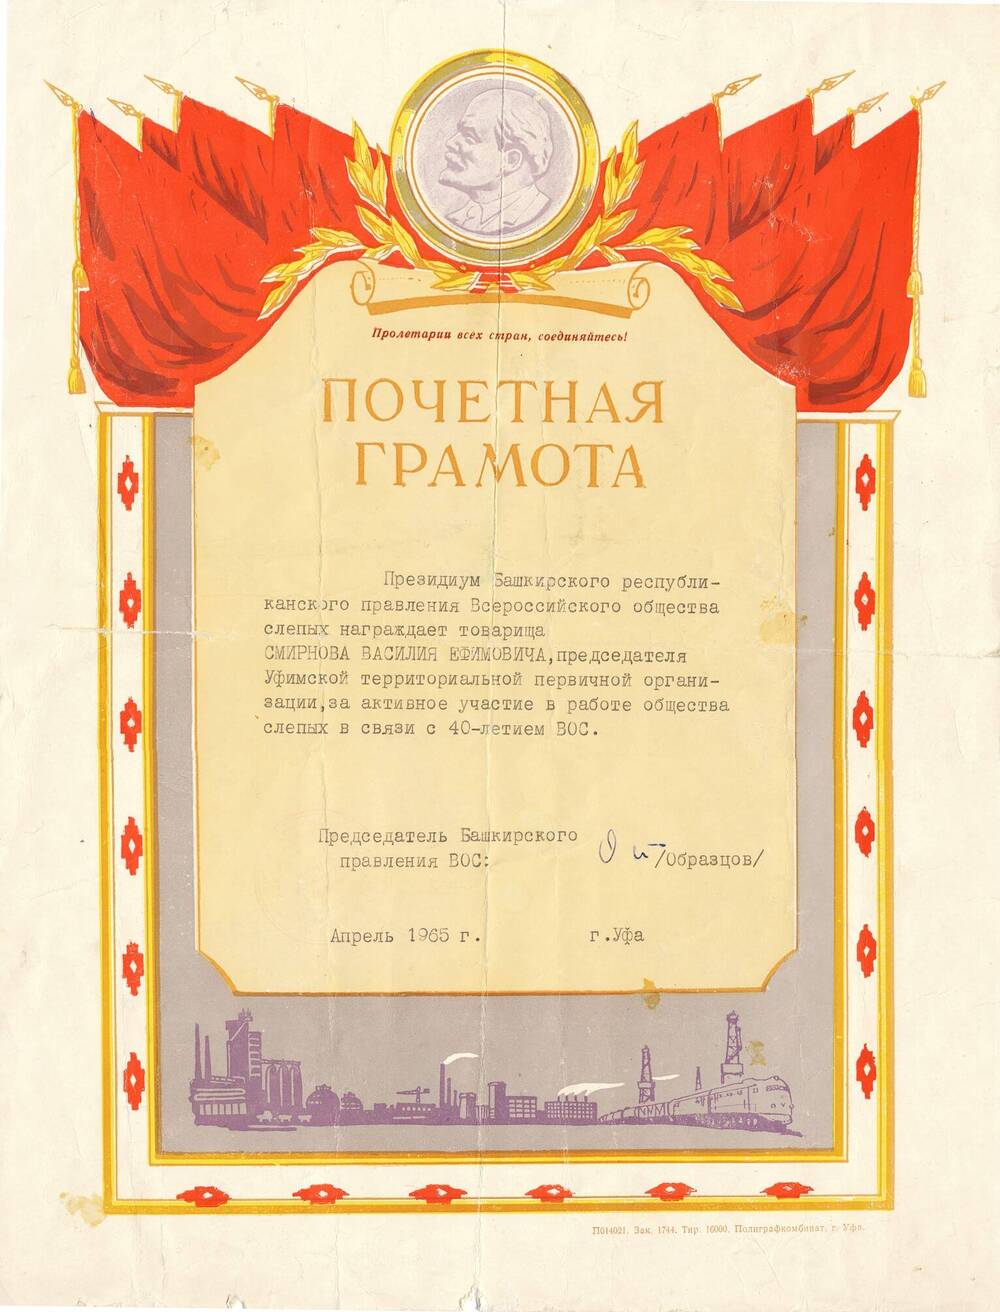 Почетная грамота-награждается Смирнов В.Е.за активное участие в работе общества слепых, г.Уфа,1965г.